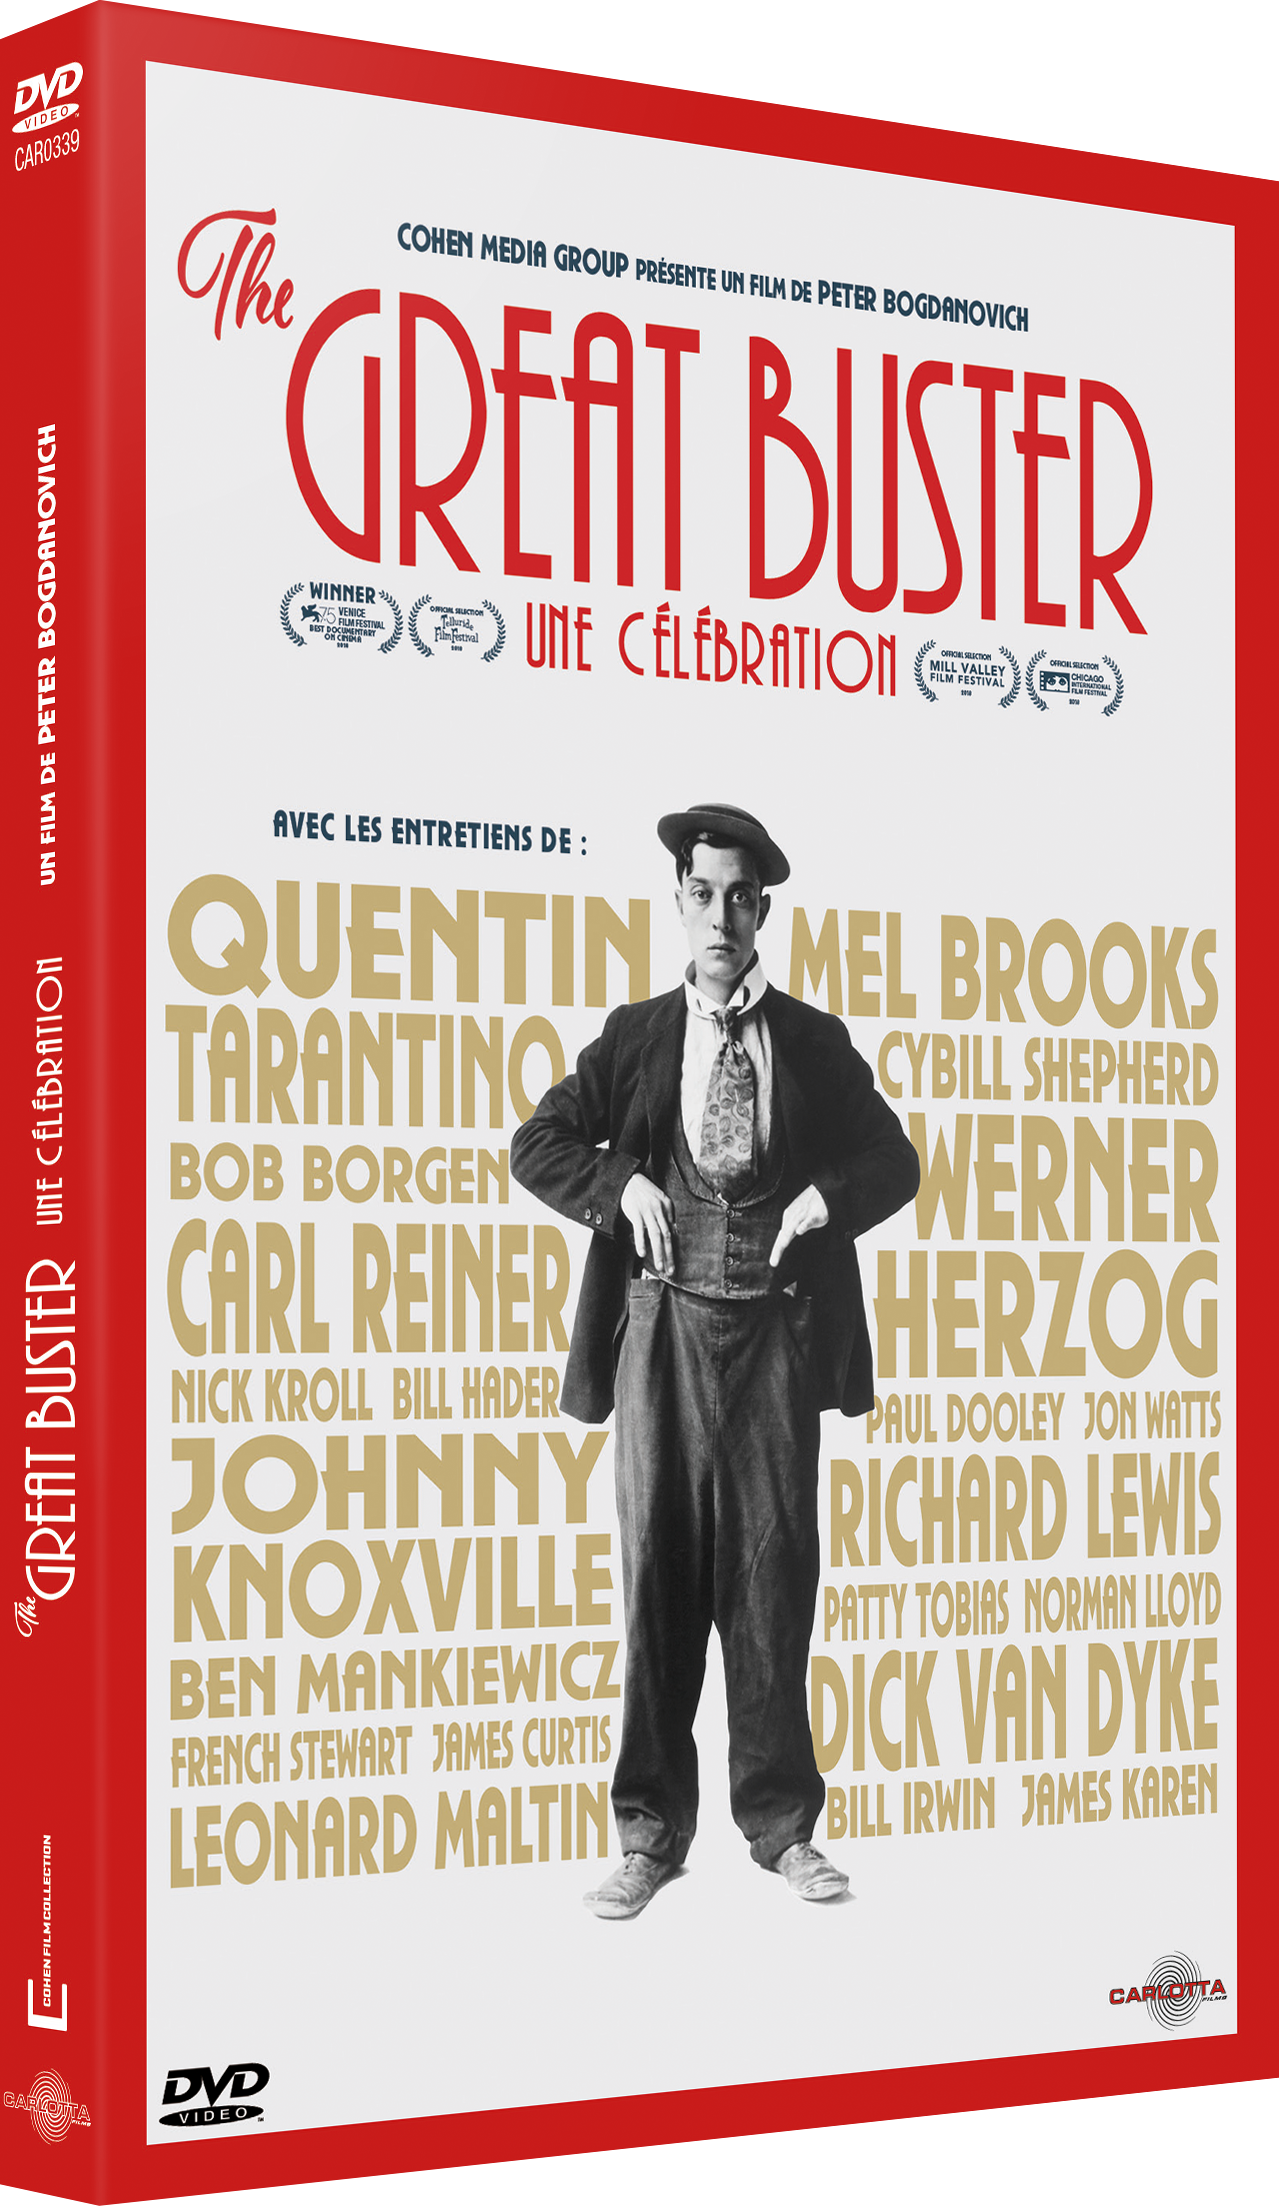 The Great Buster : Une célébration de Peter Bogdanovich